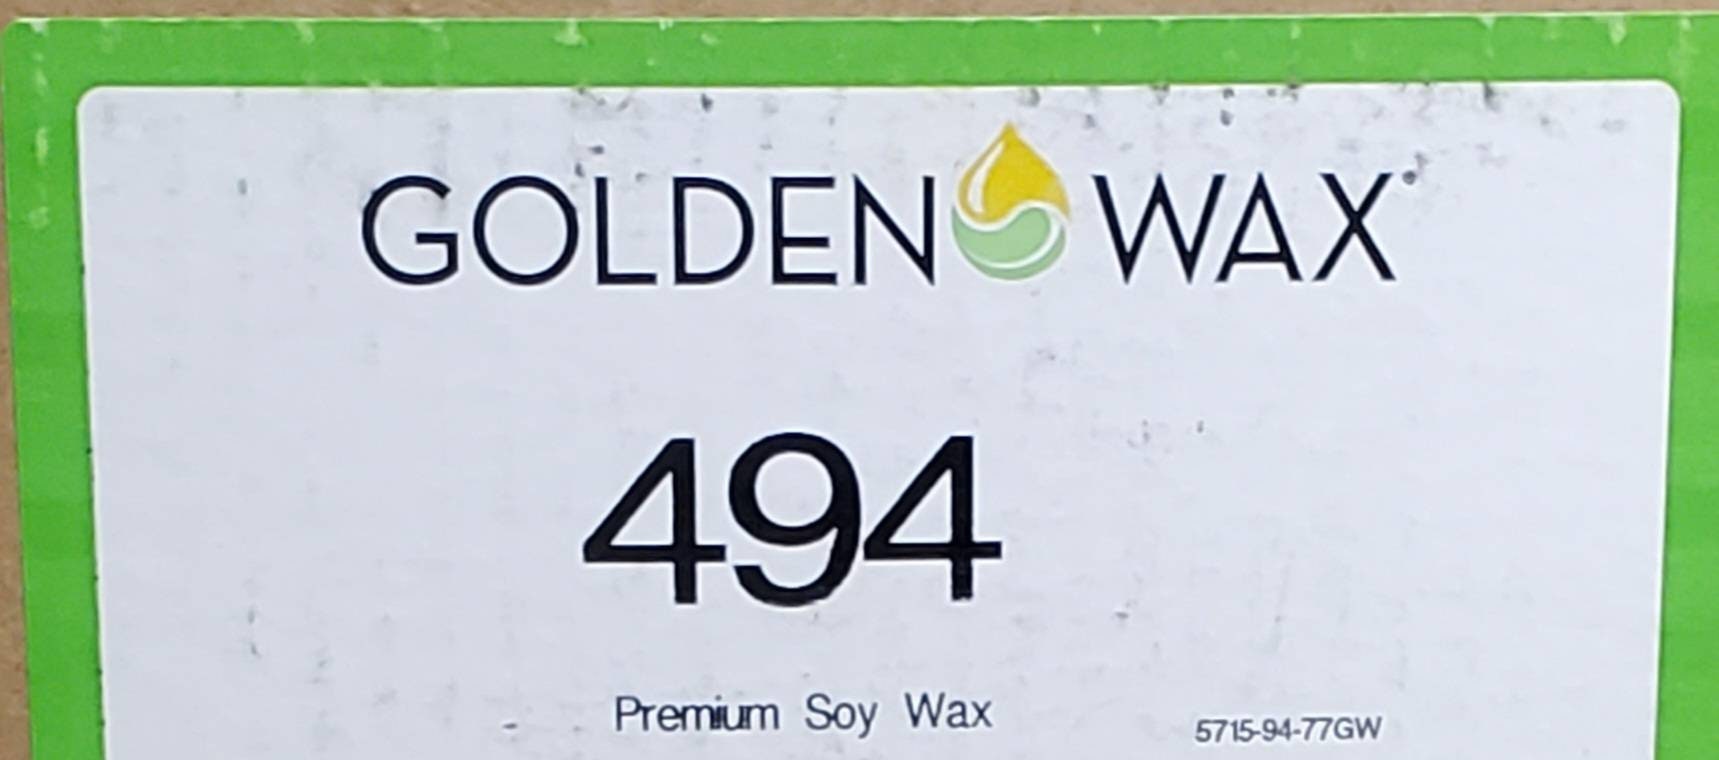 Golden Wax 464 Soy Blend Wax